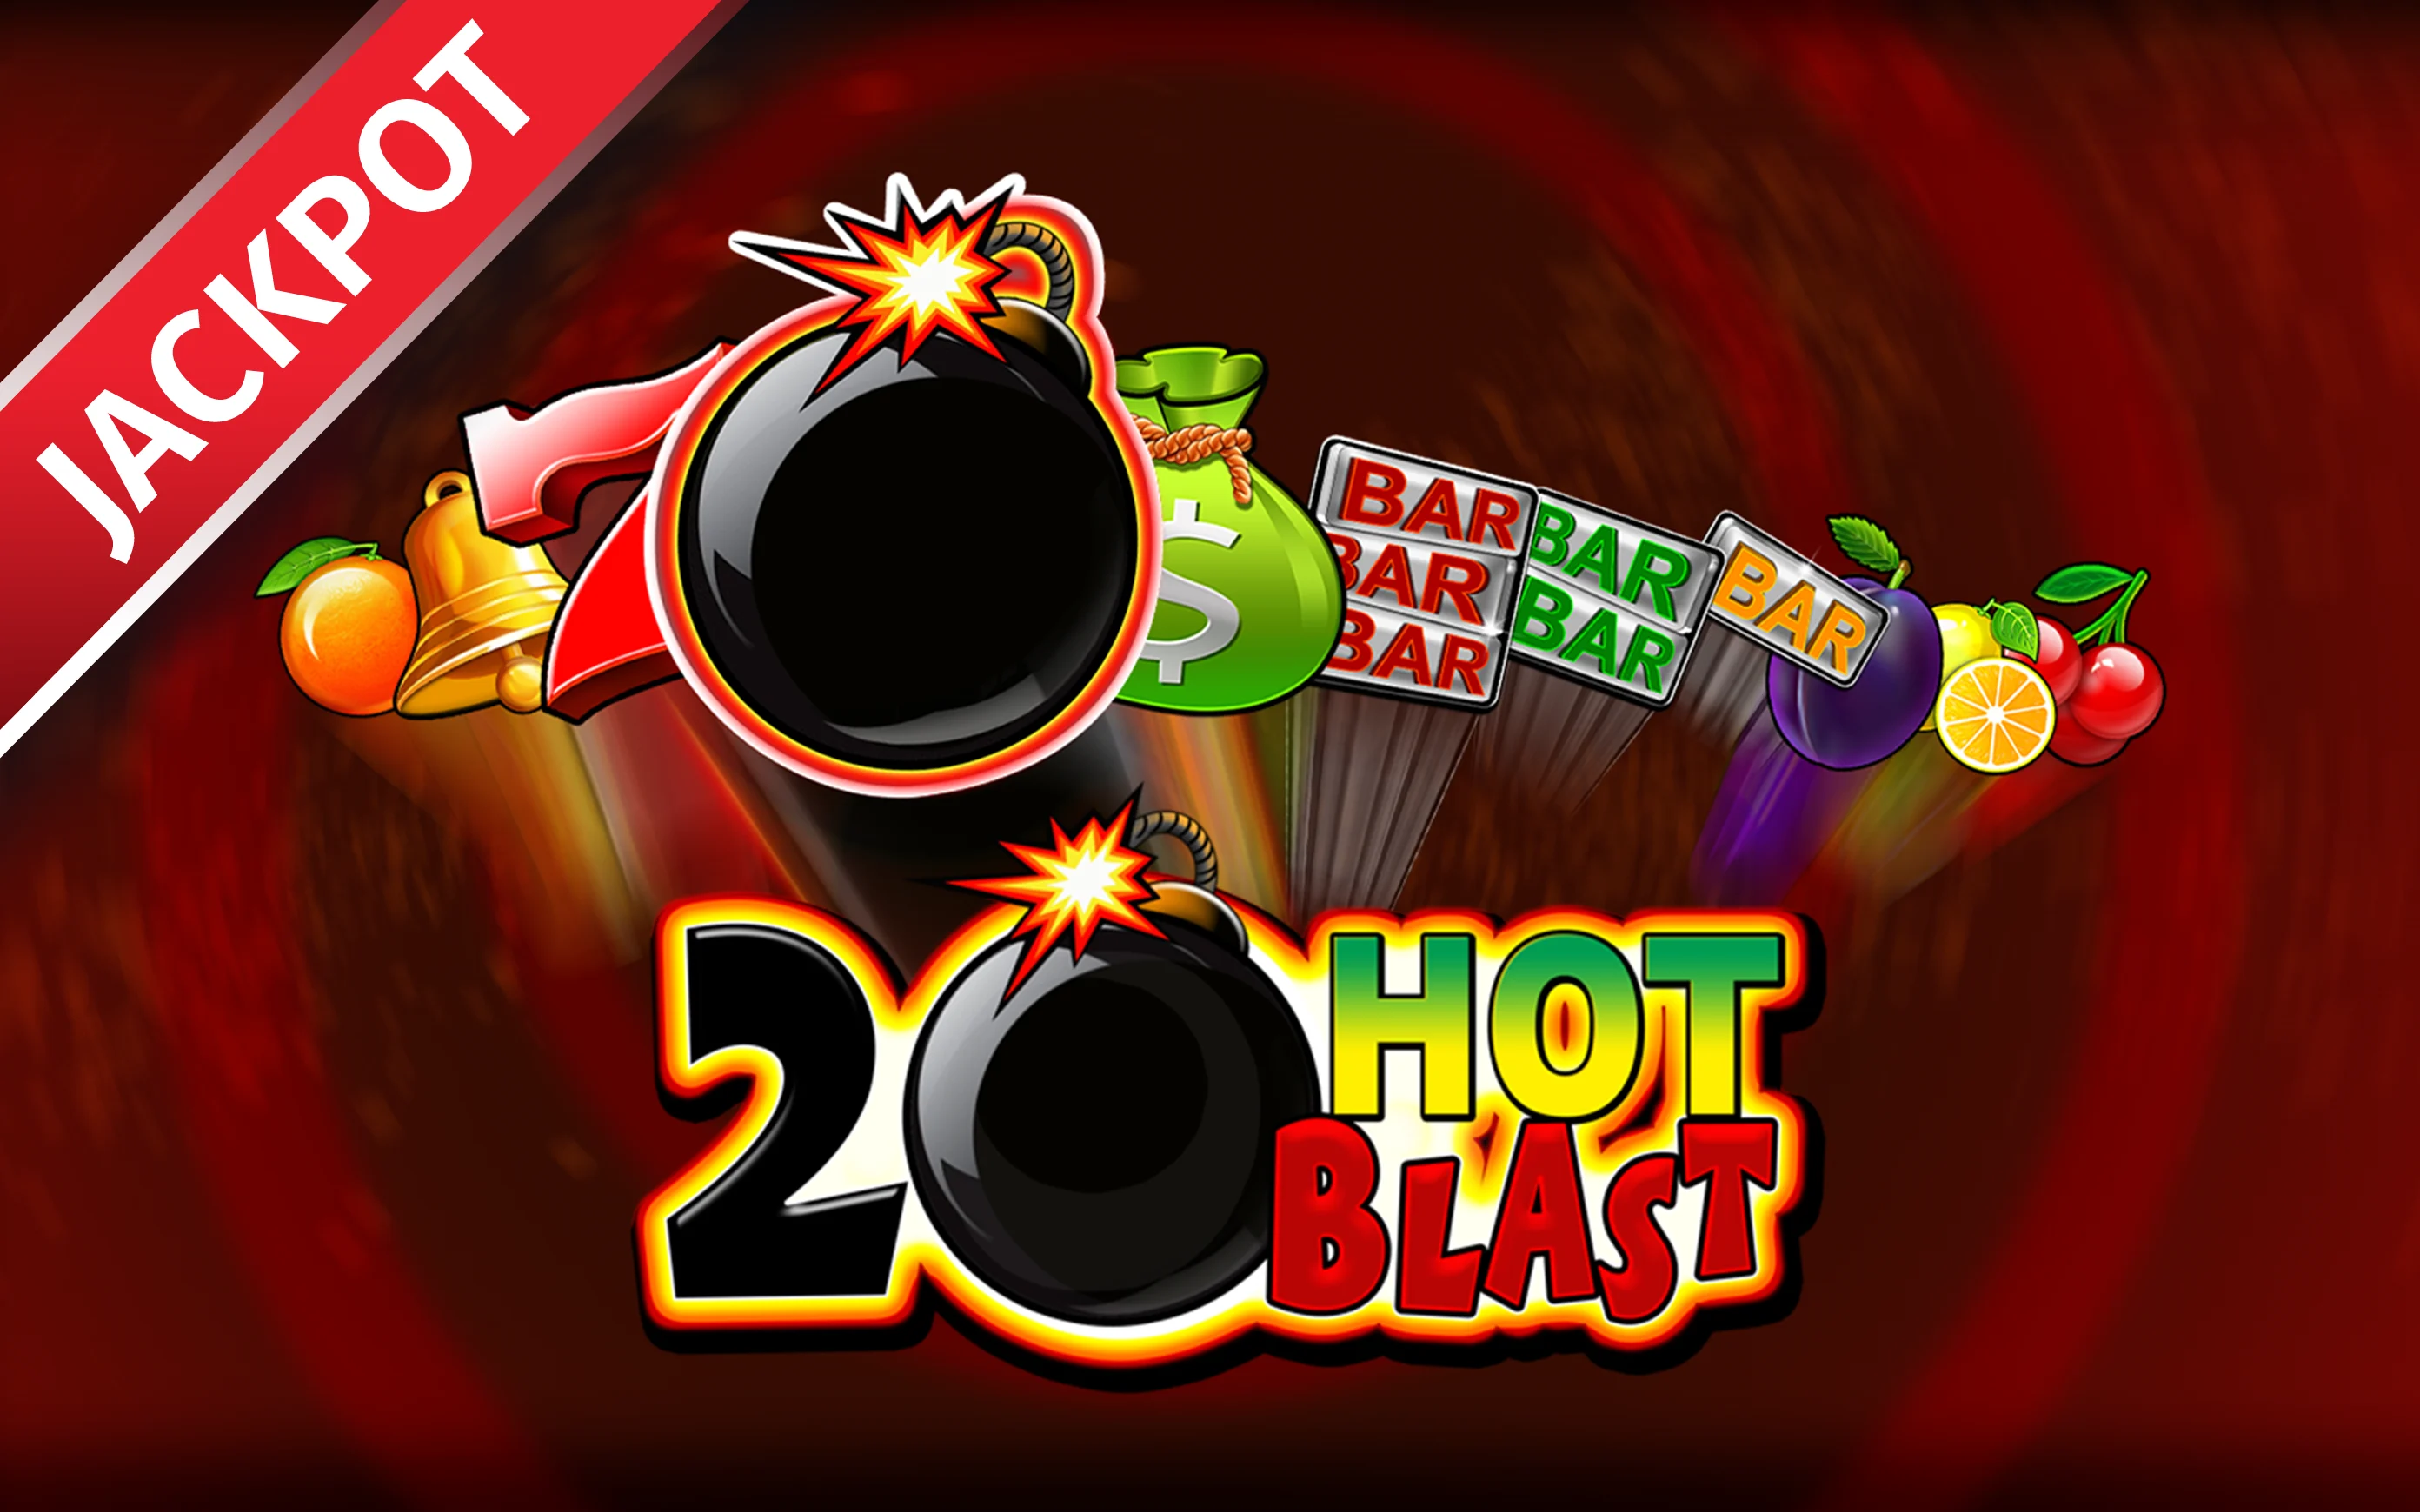 Zagraj w 20 Hot Blast w kasynie online Starcasino.be